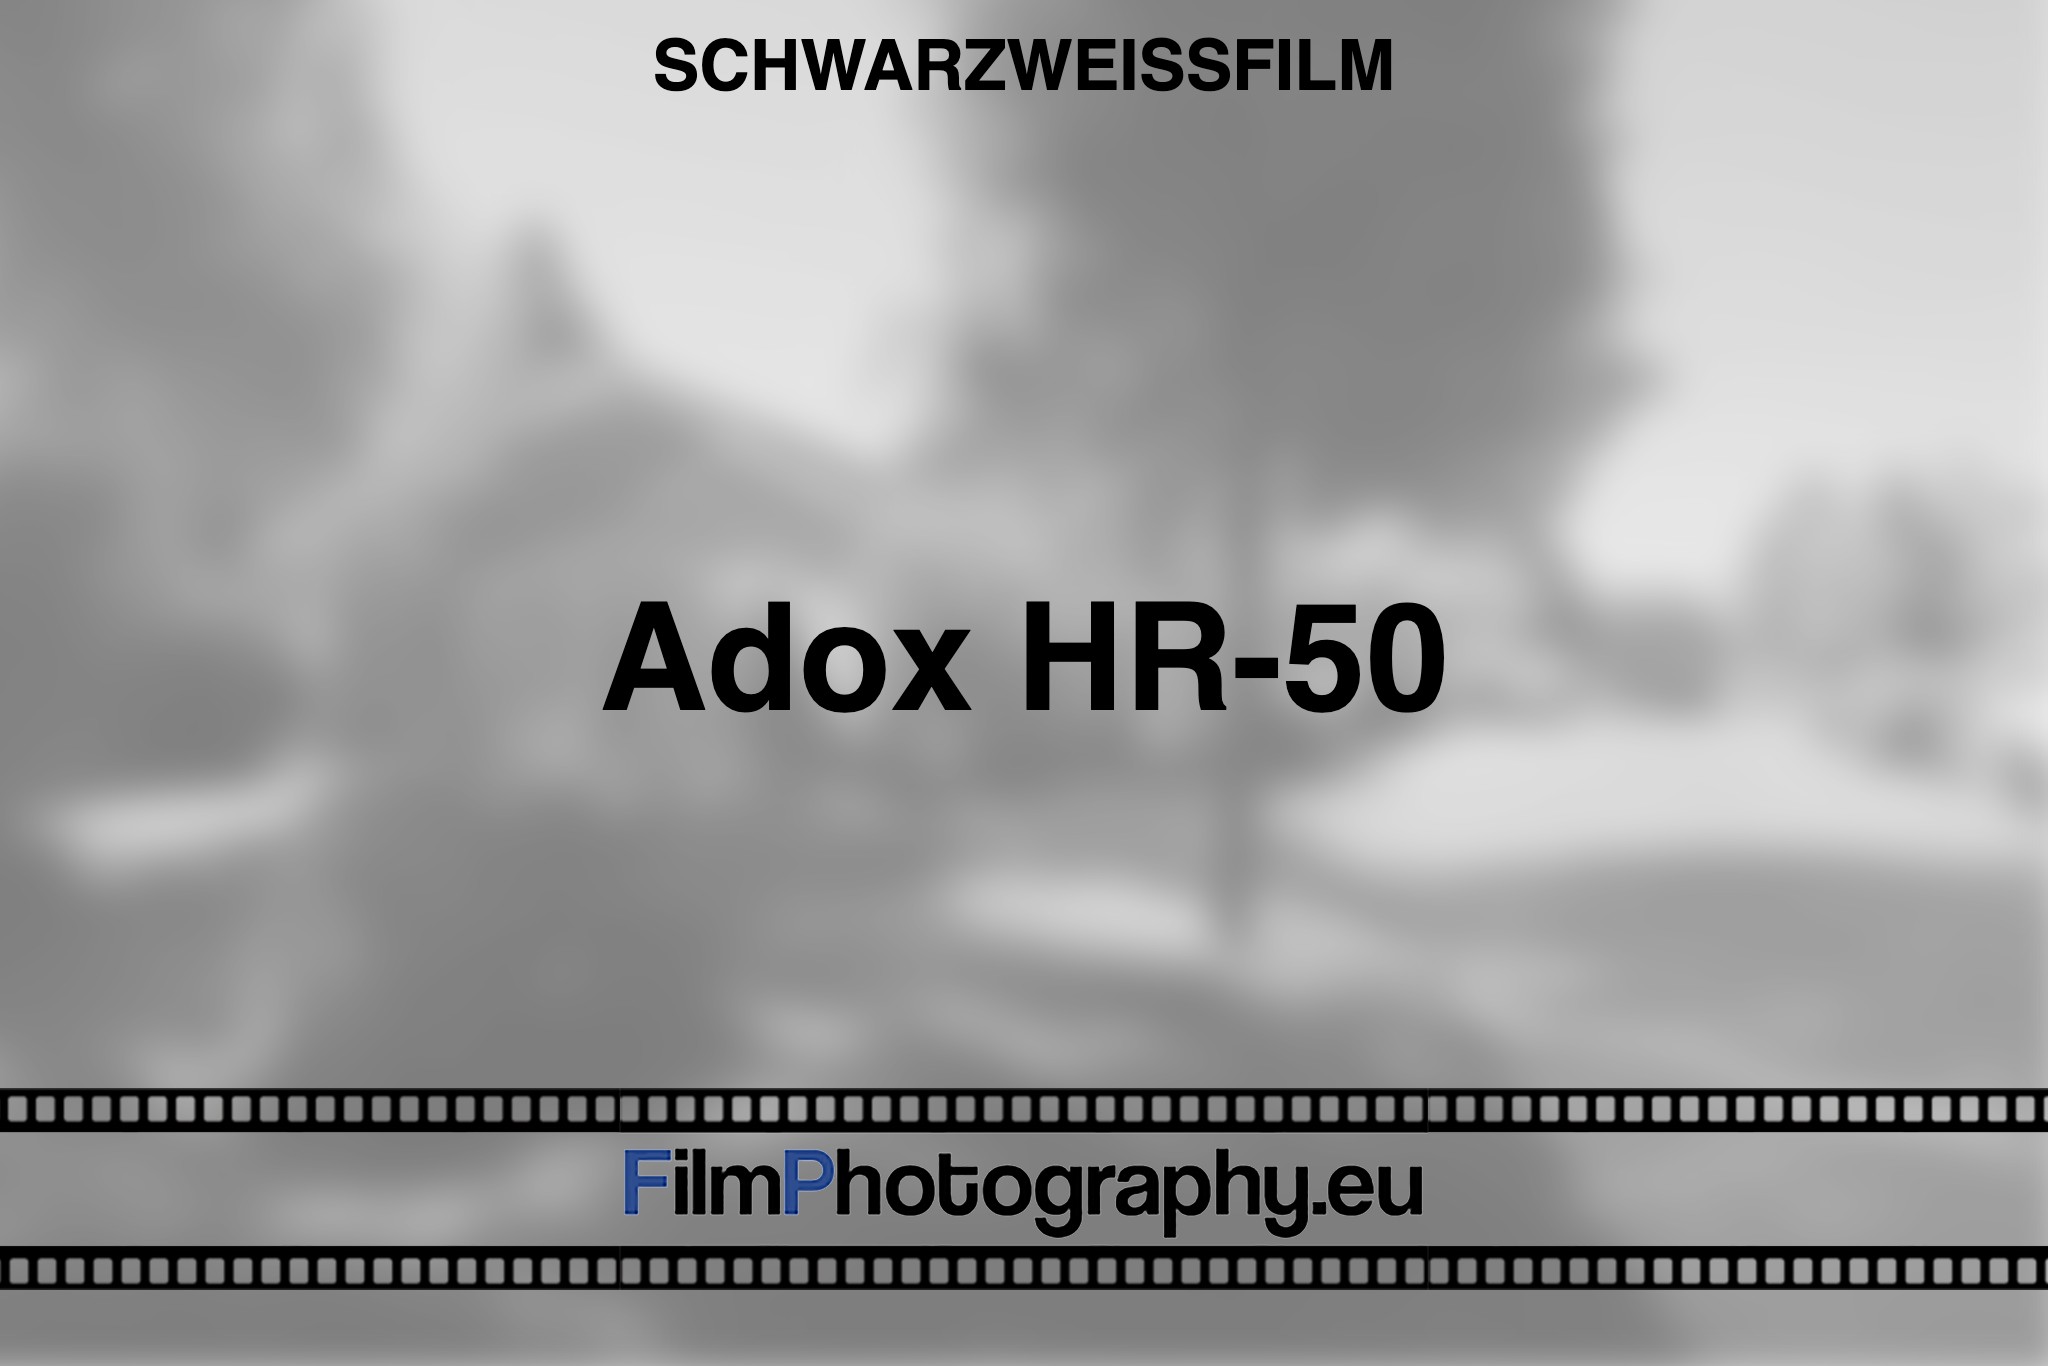 adox-hr-50-schwarzweißfilm-bnv